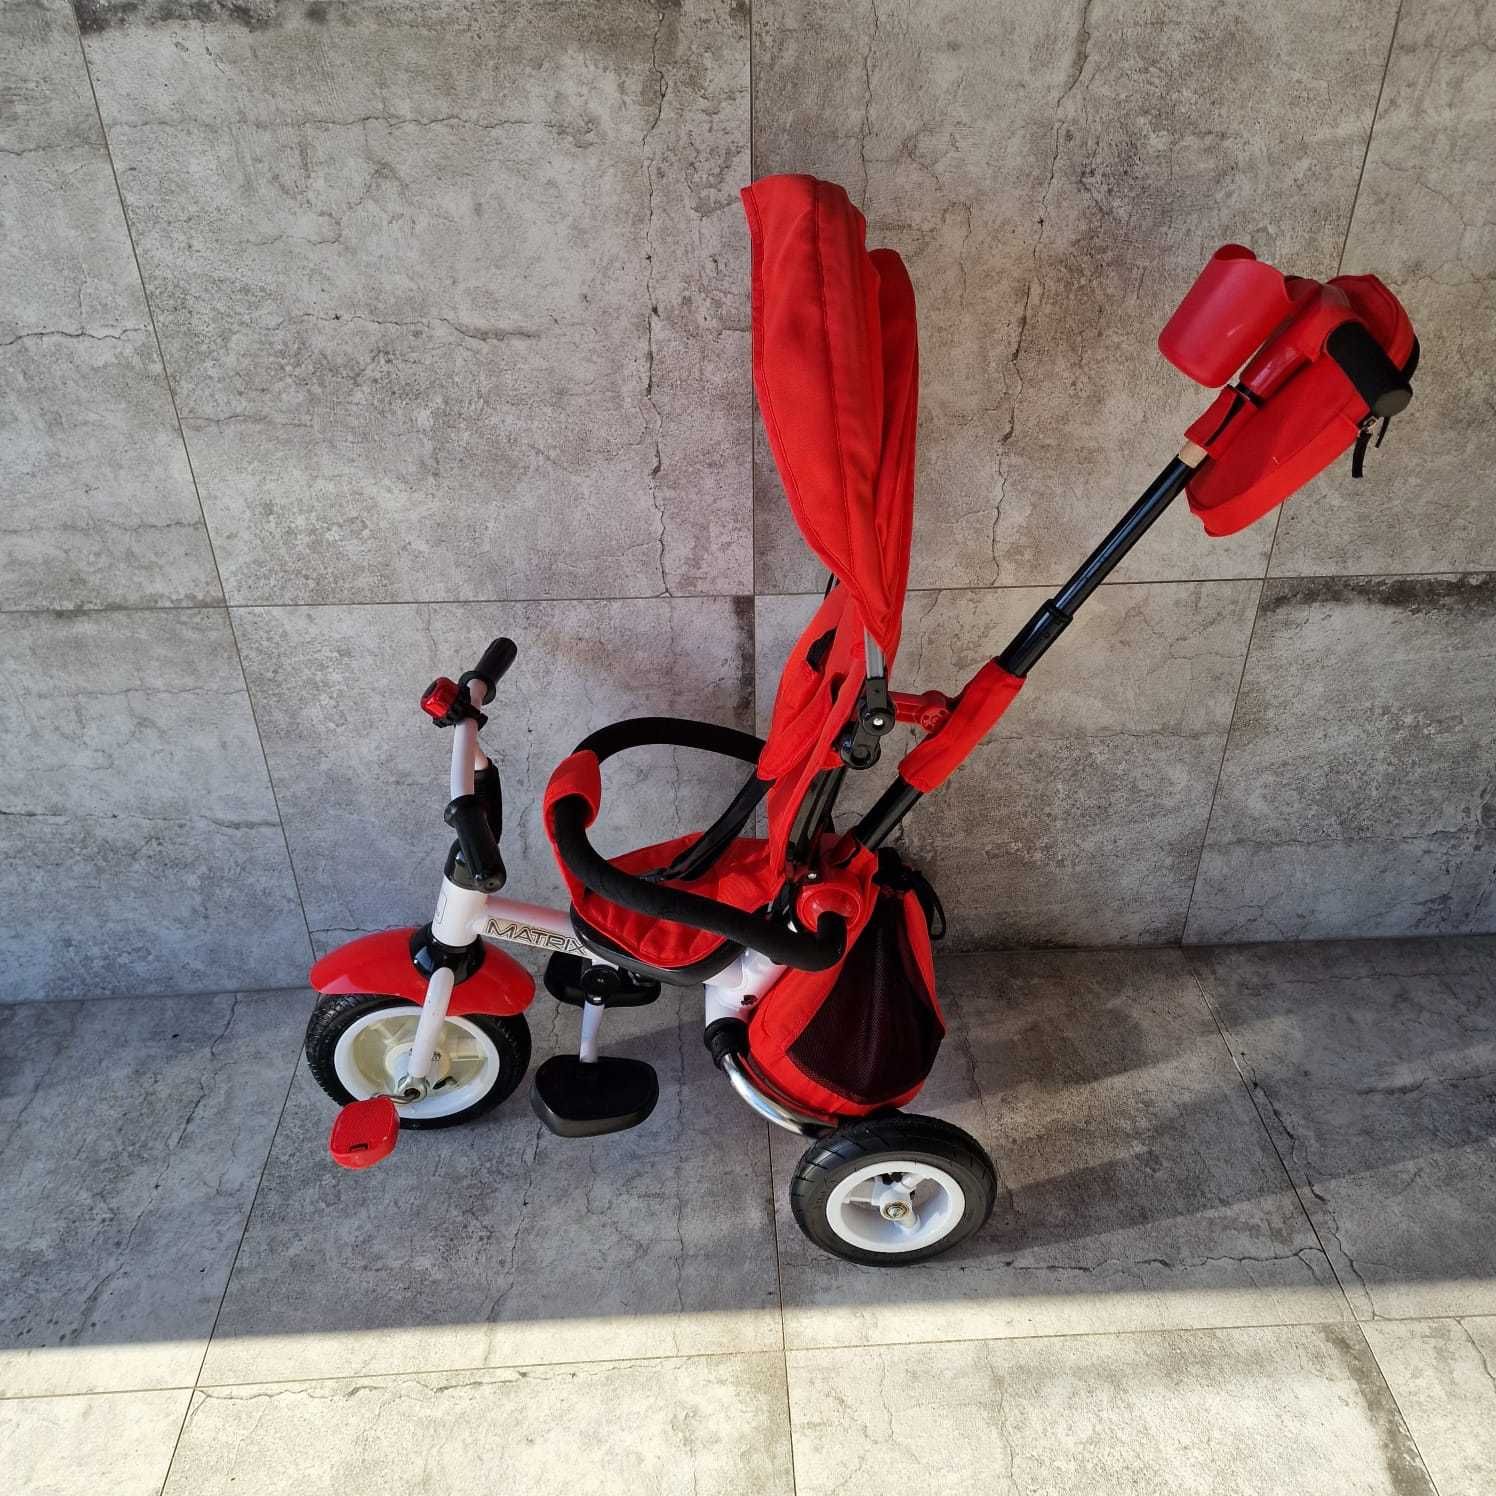 Rowerek dla dziecka trzykołowy